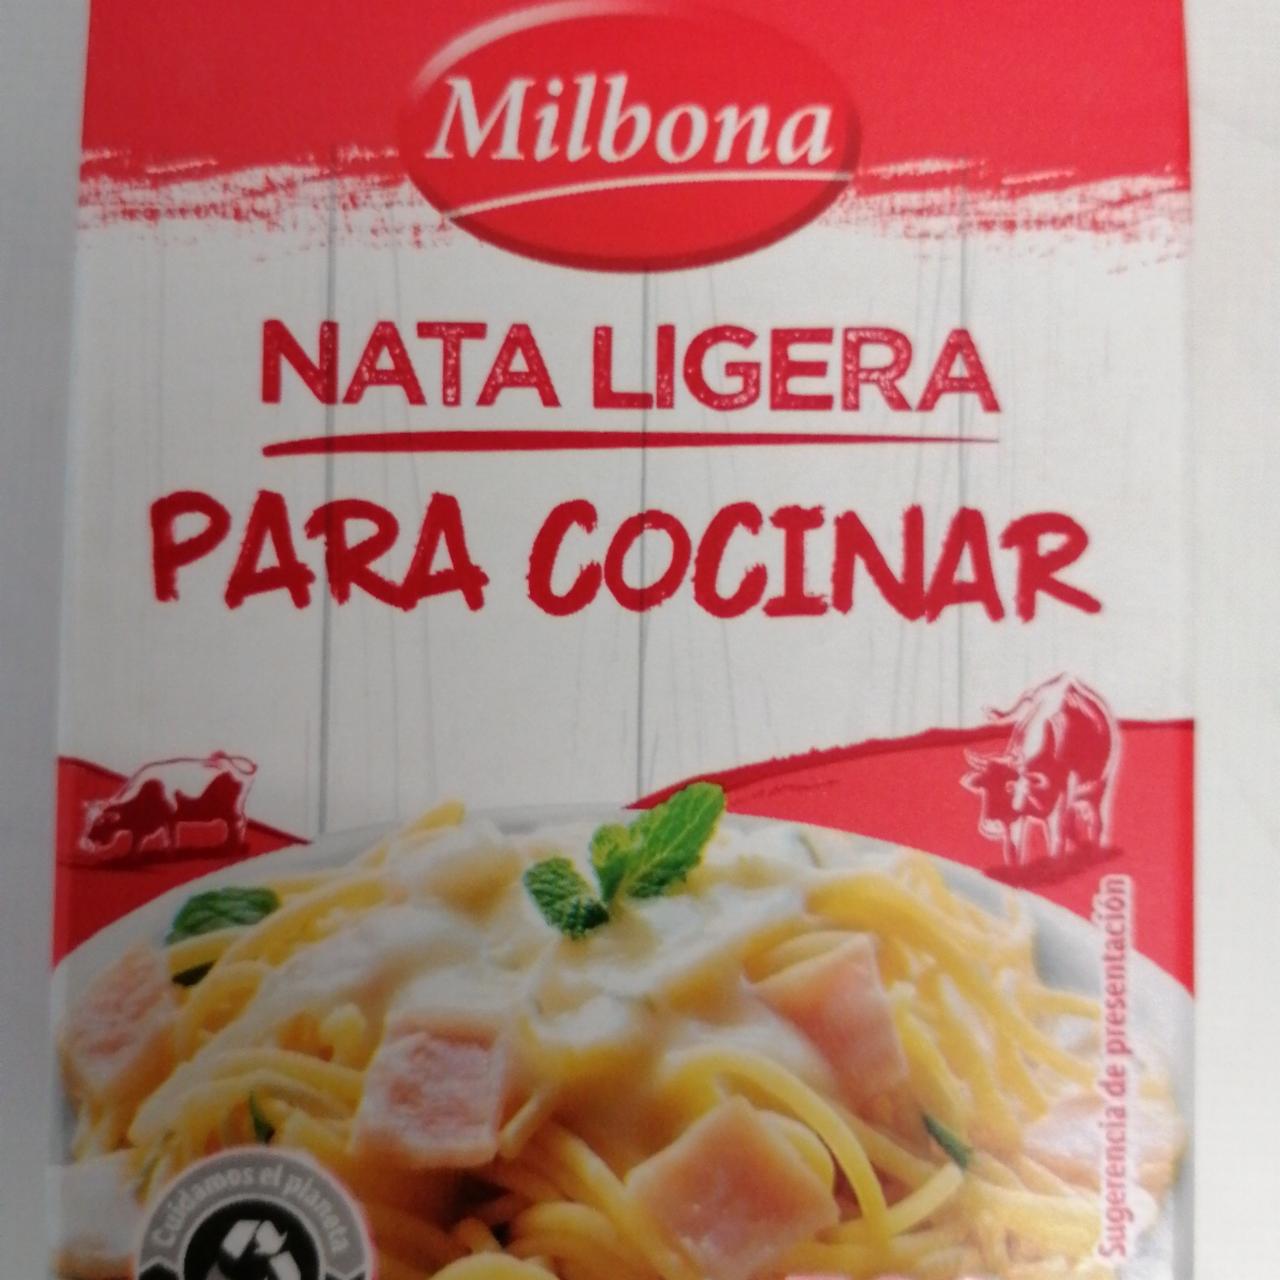 Fotografie - Nata Ligera para Cocinar Milbona